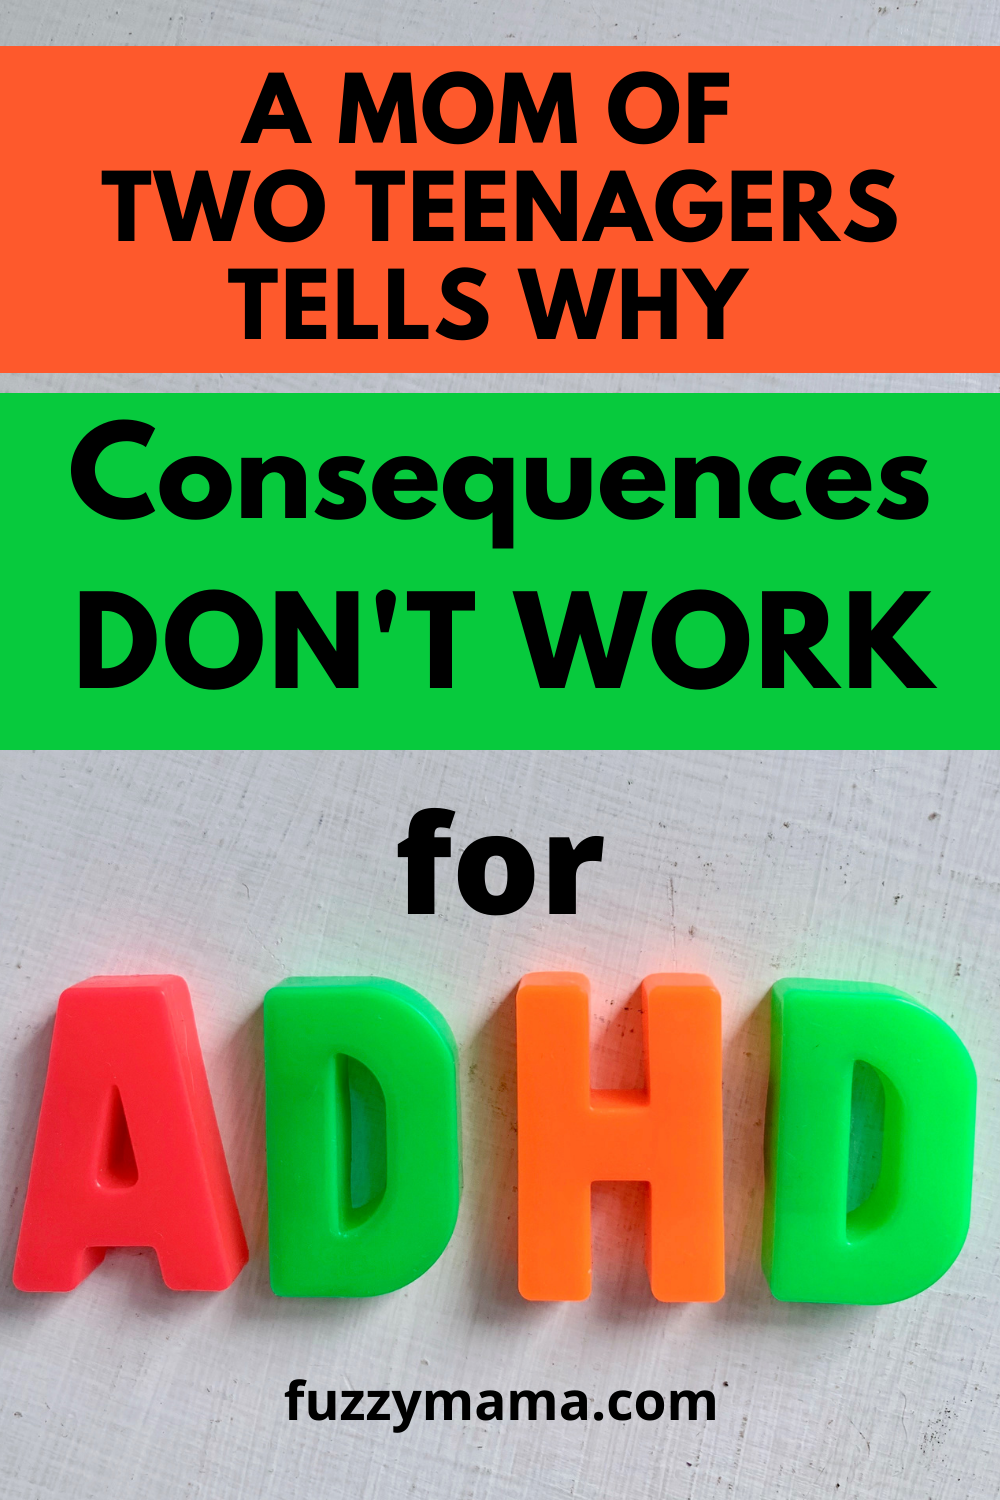 Parenting ADHD